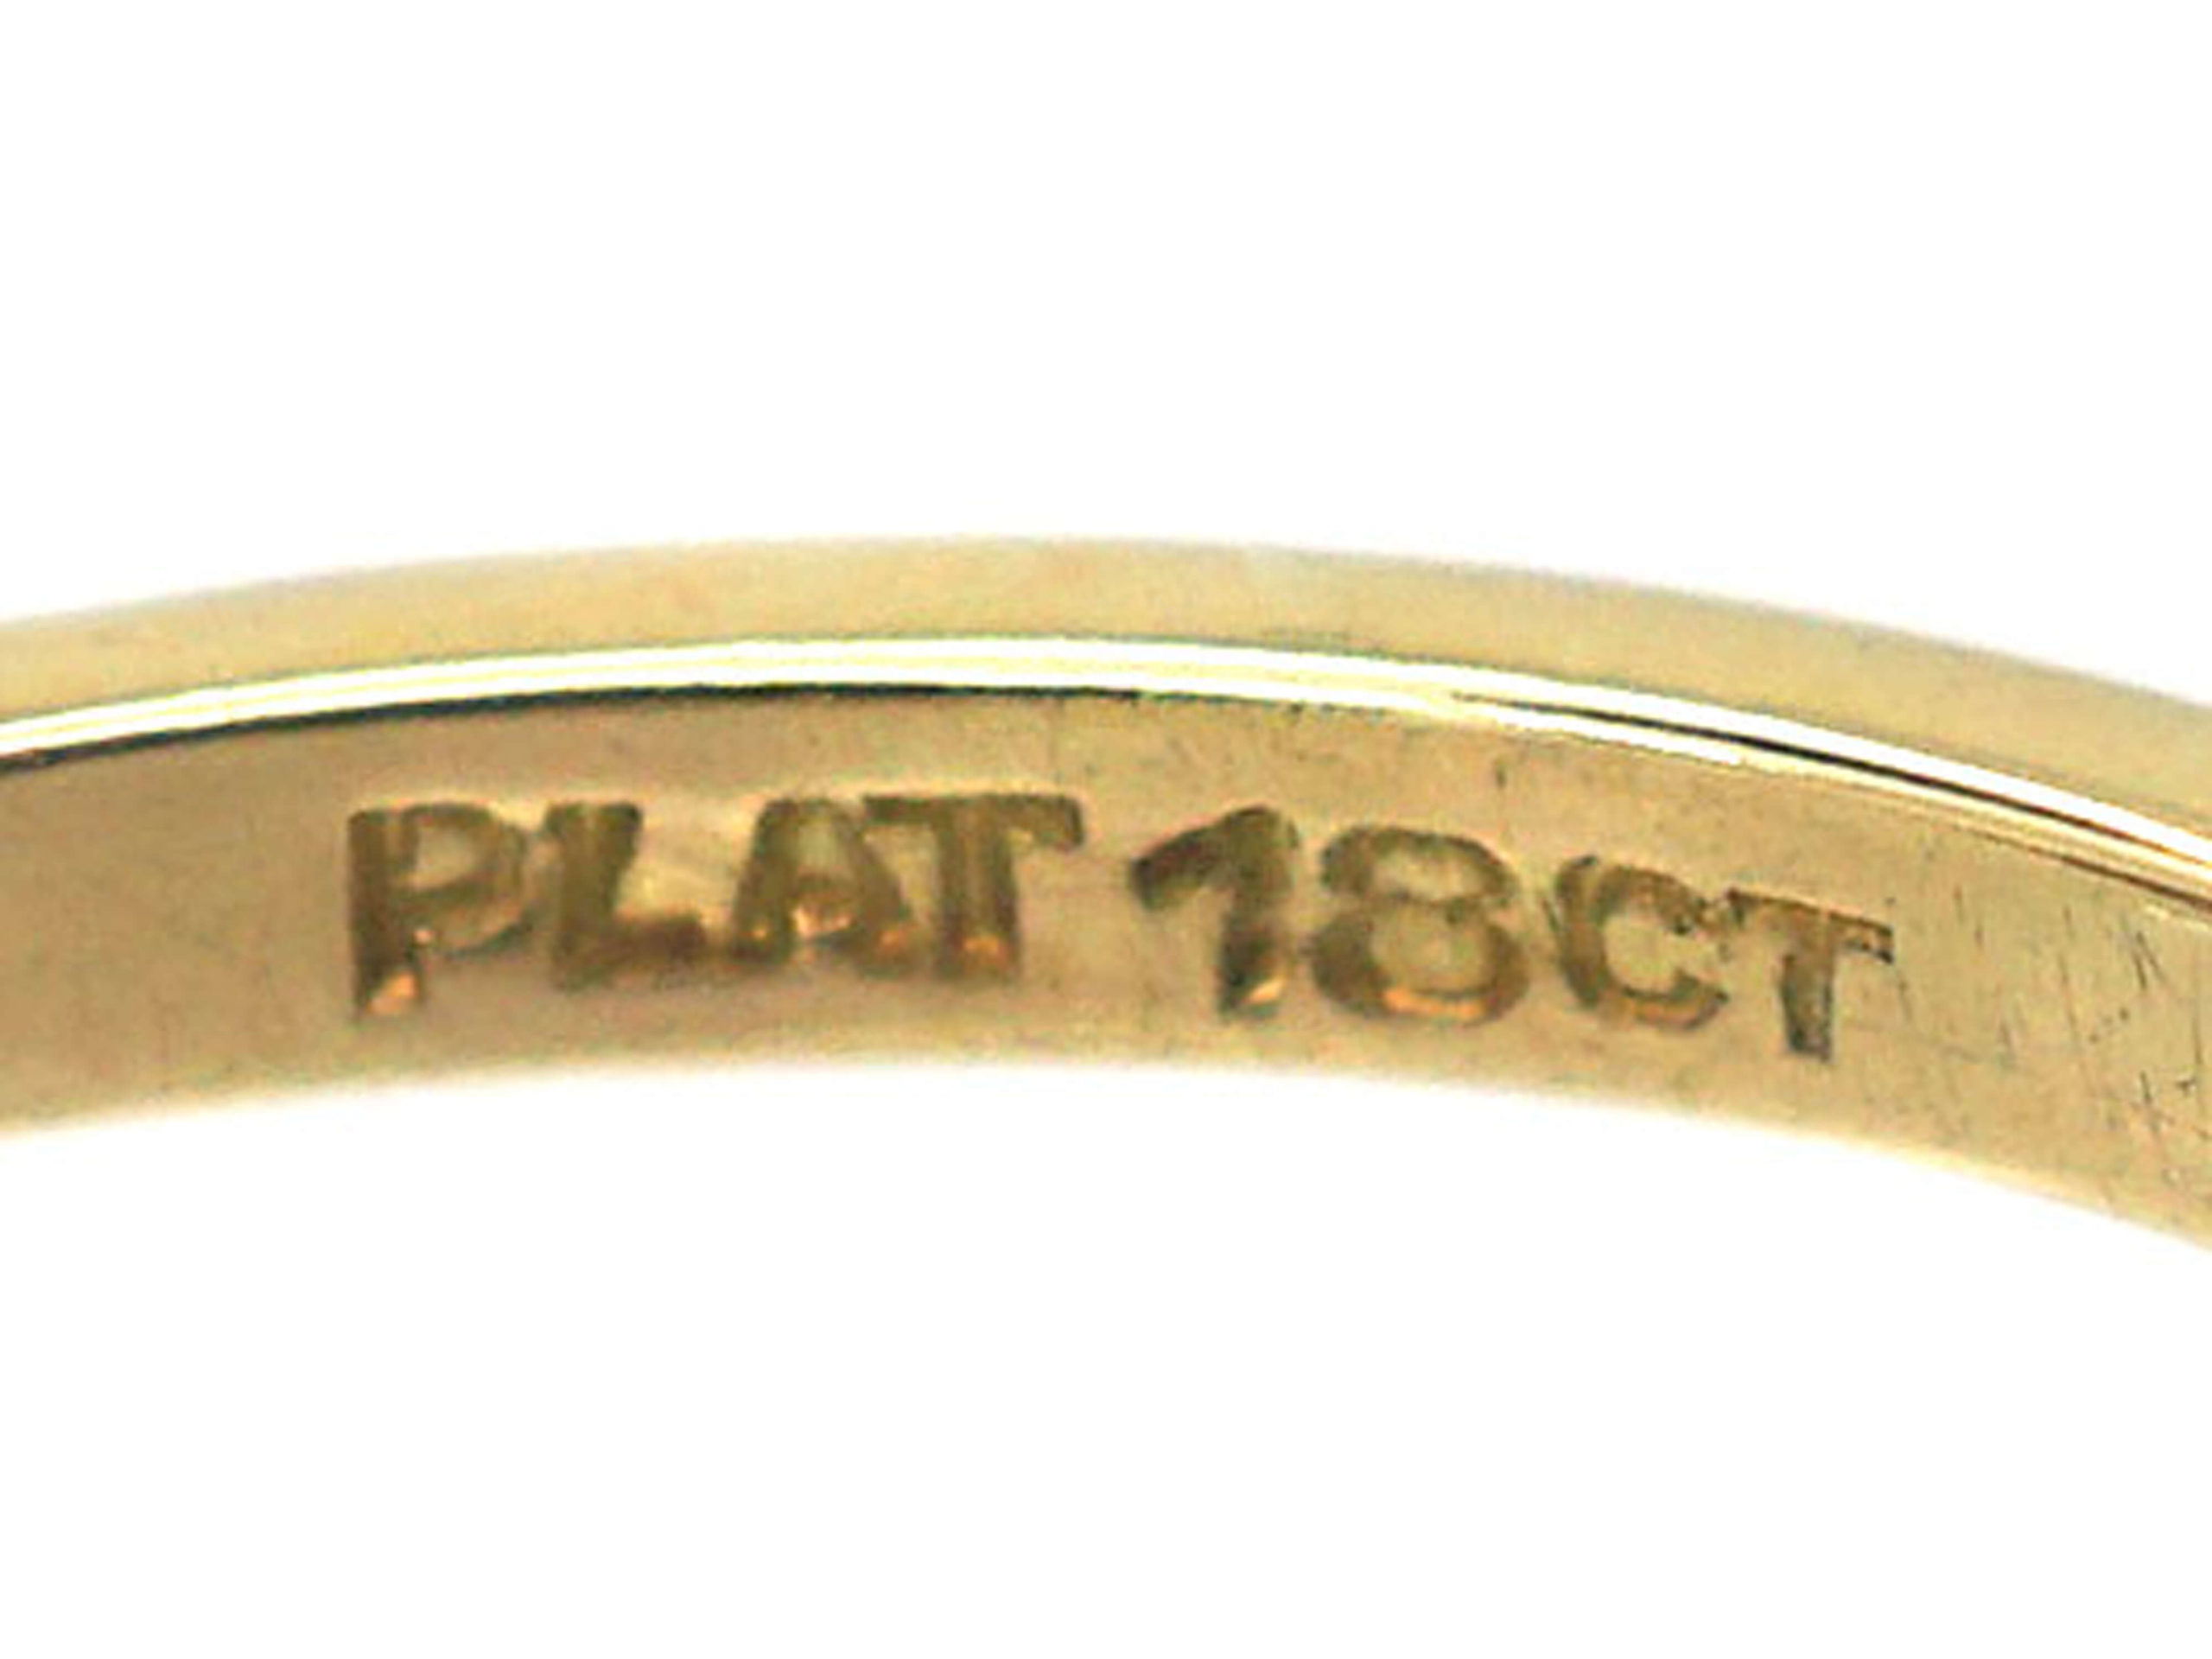 O que significa plat 18ct em um anel?